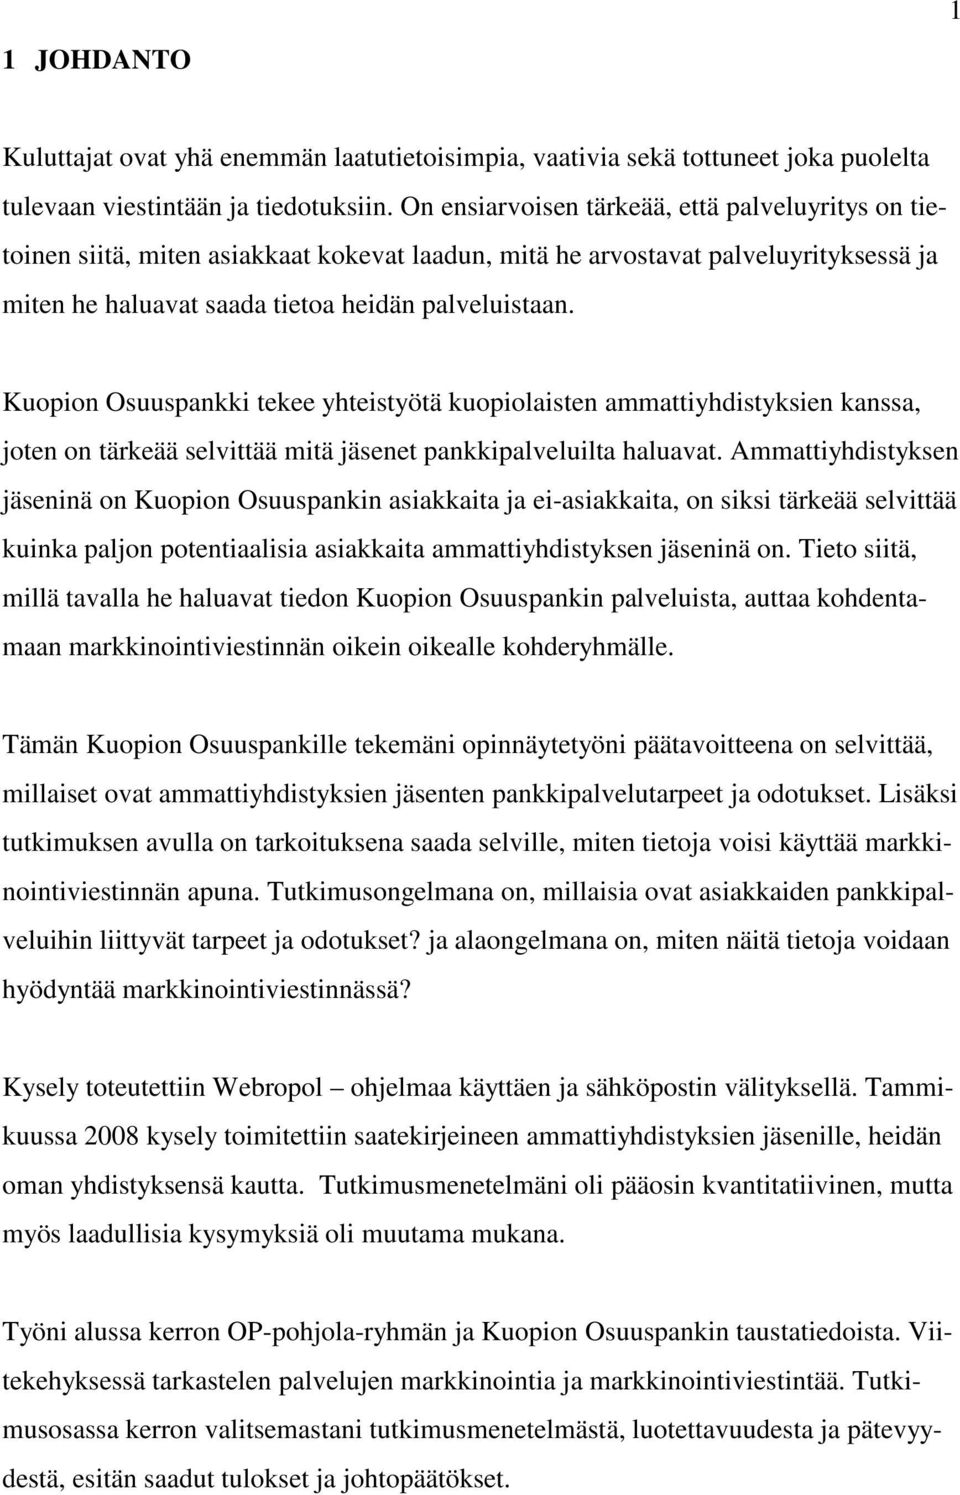 Kuopion Osuuspankki tekee yhteistyötä kuopiolaisten ammattiyhdistyksien kanssa, joten on tärkeää selvittää mitä jäsenet pankkipalveluilta haluavat.